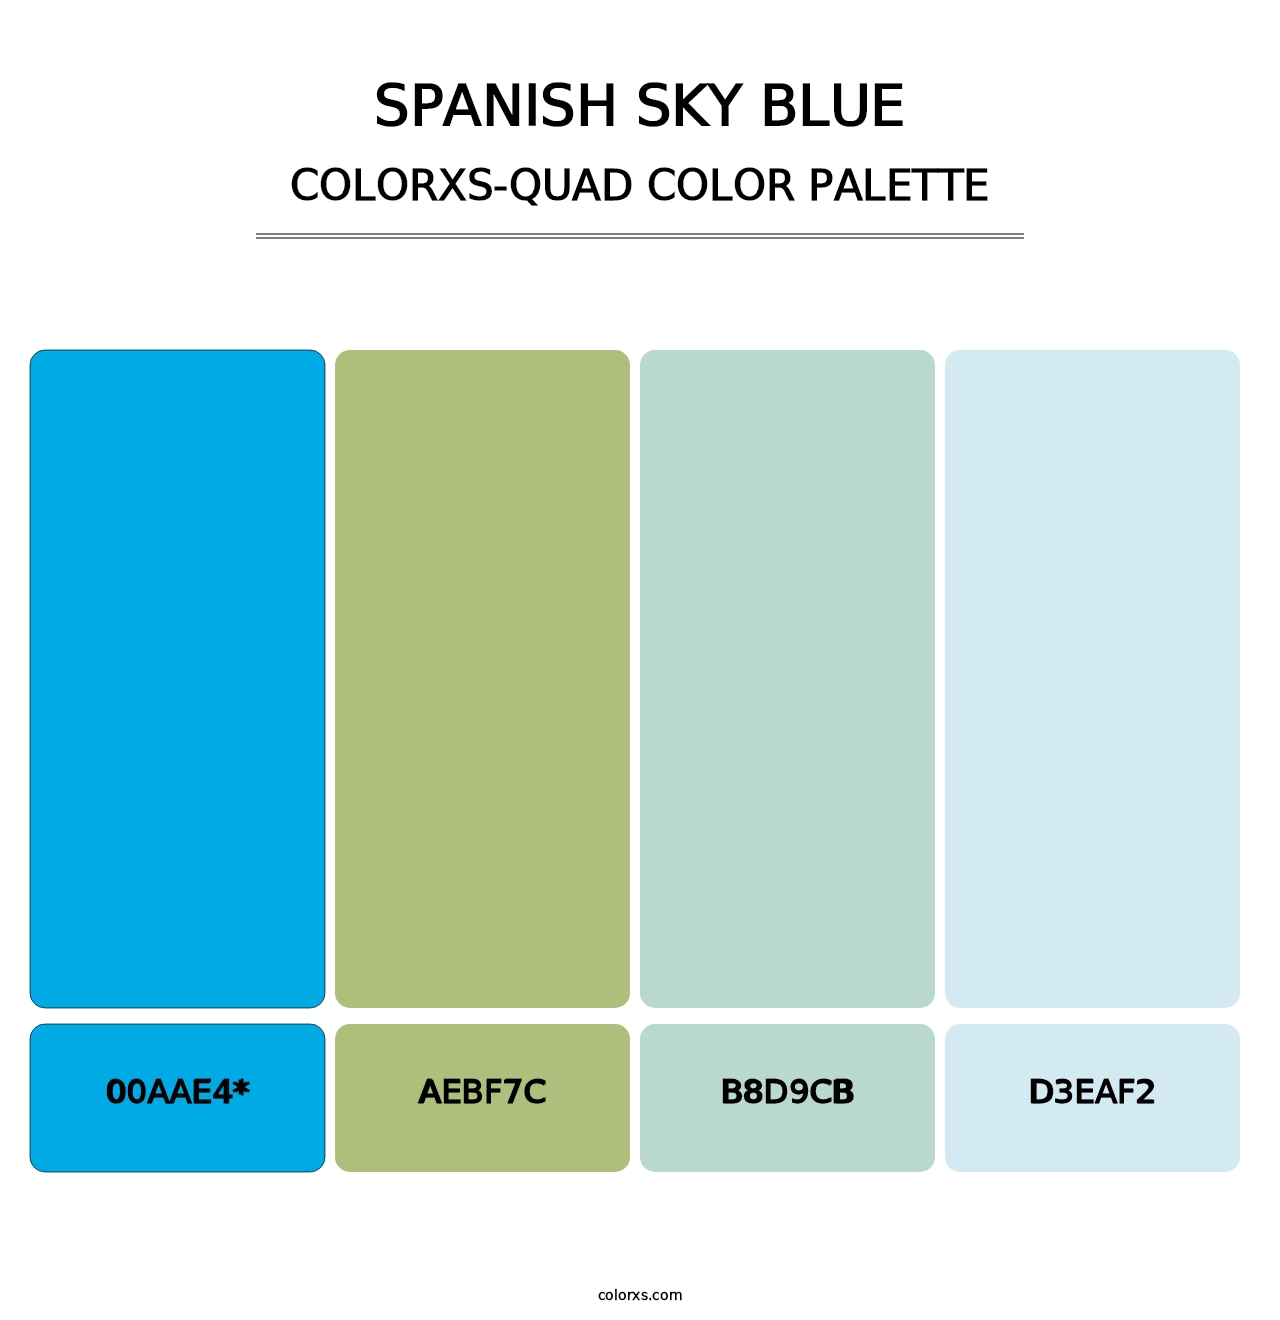 Spanish Sky Blue - Colorxs Quad Palette